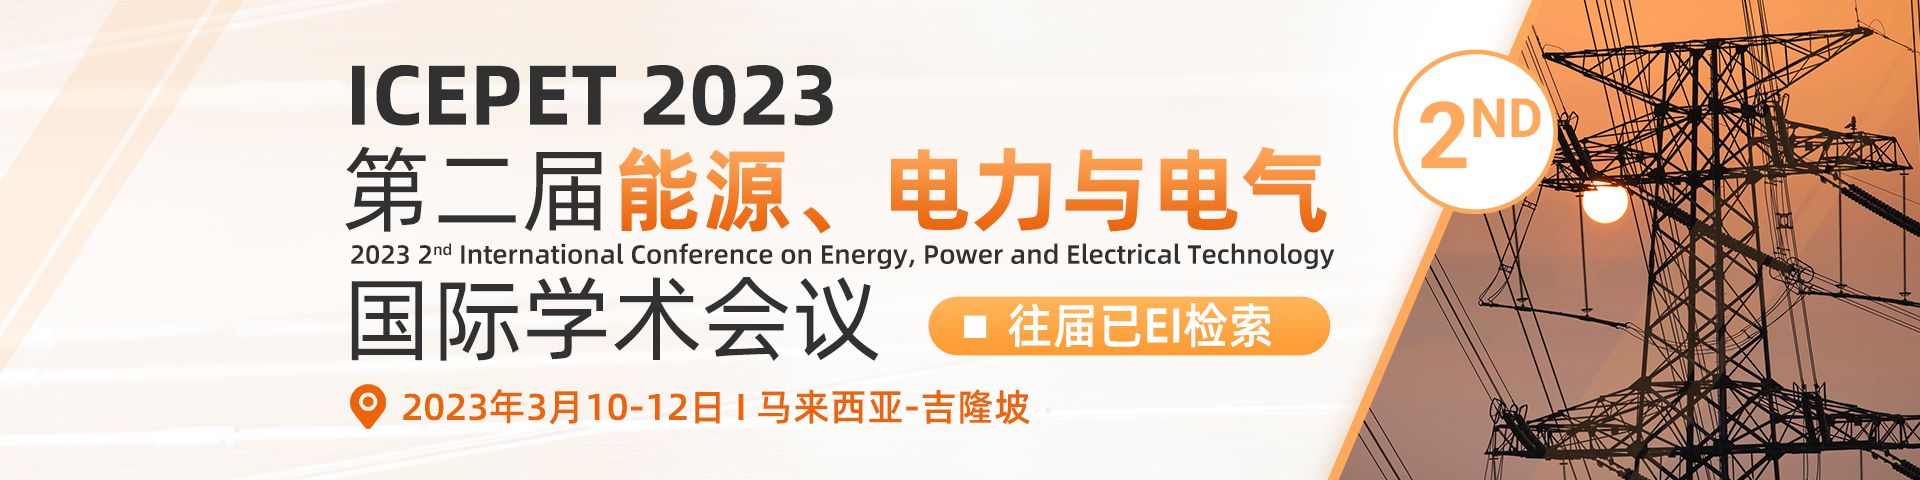 3月广州-ICEPET 2023会议前期宣传设计单-会议官网轮播图（中文）-陈嘉妍-20221009.png